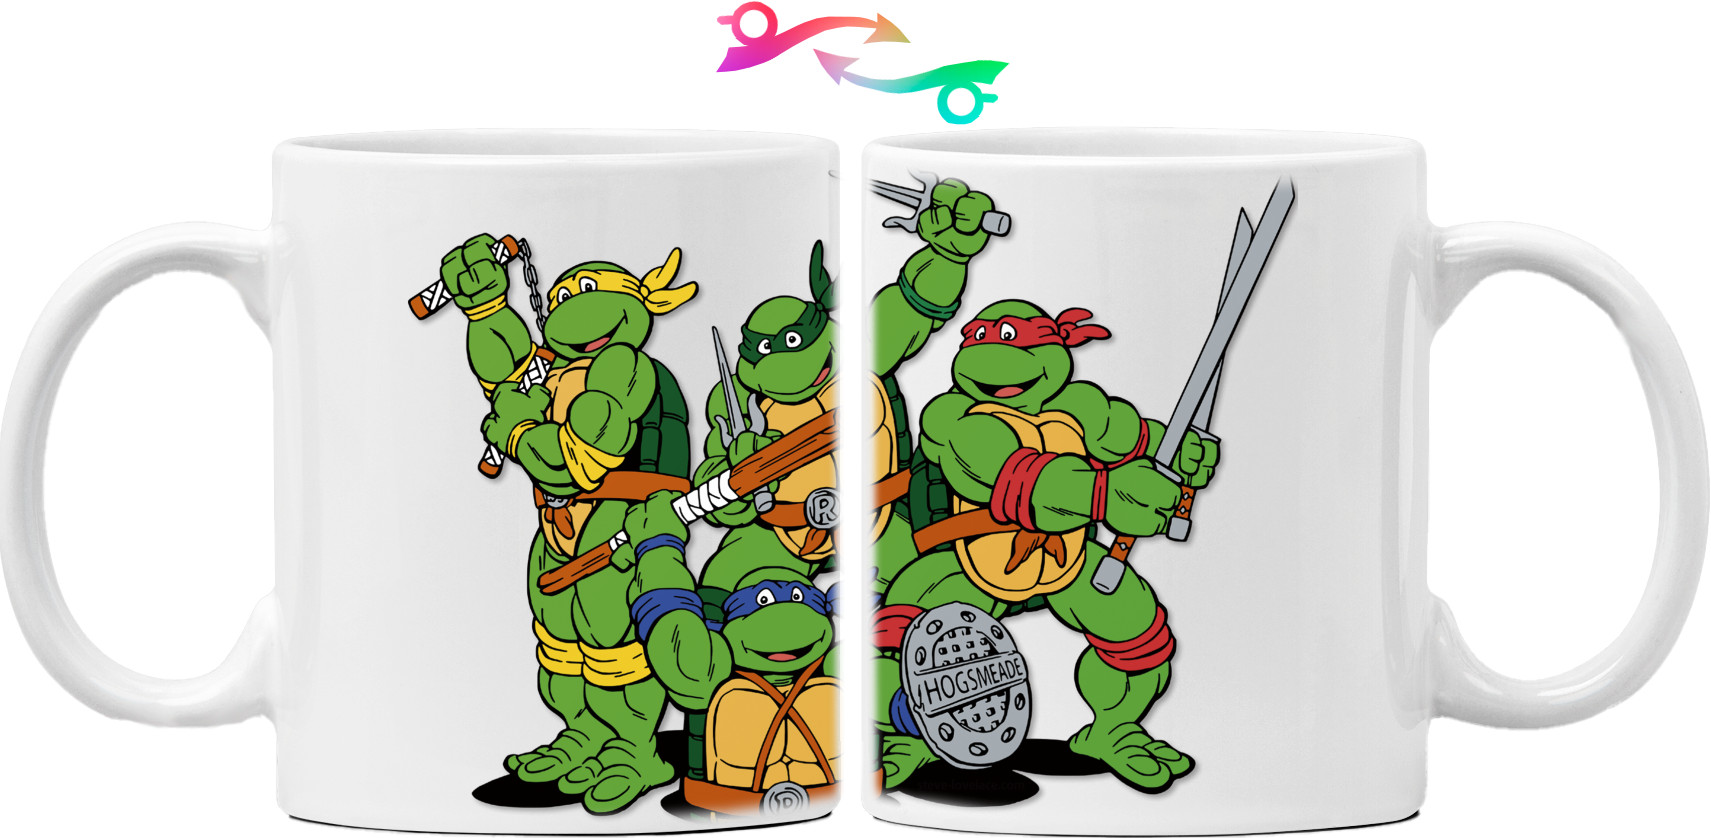 Черепашки ниндзя - Mug - Teenage Mutant Ninja Turtles 1 - Mfest